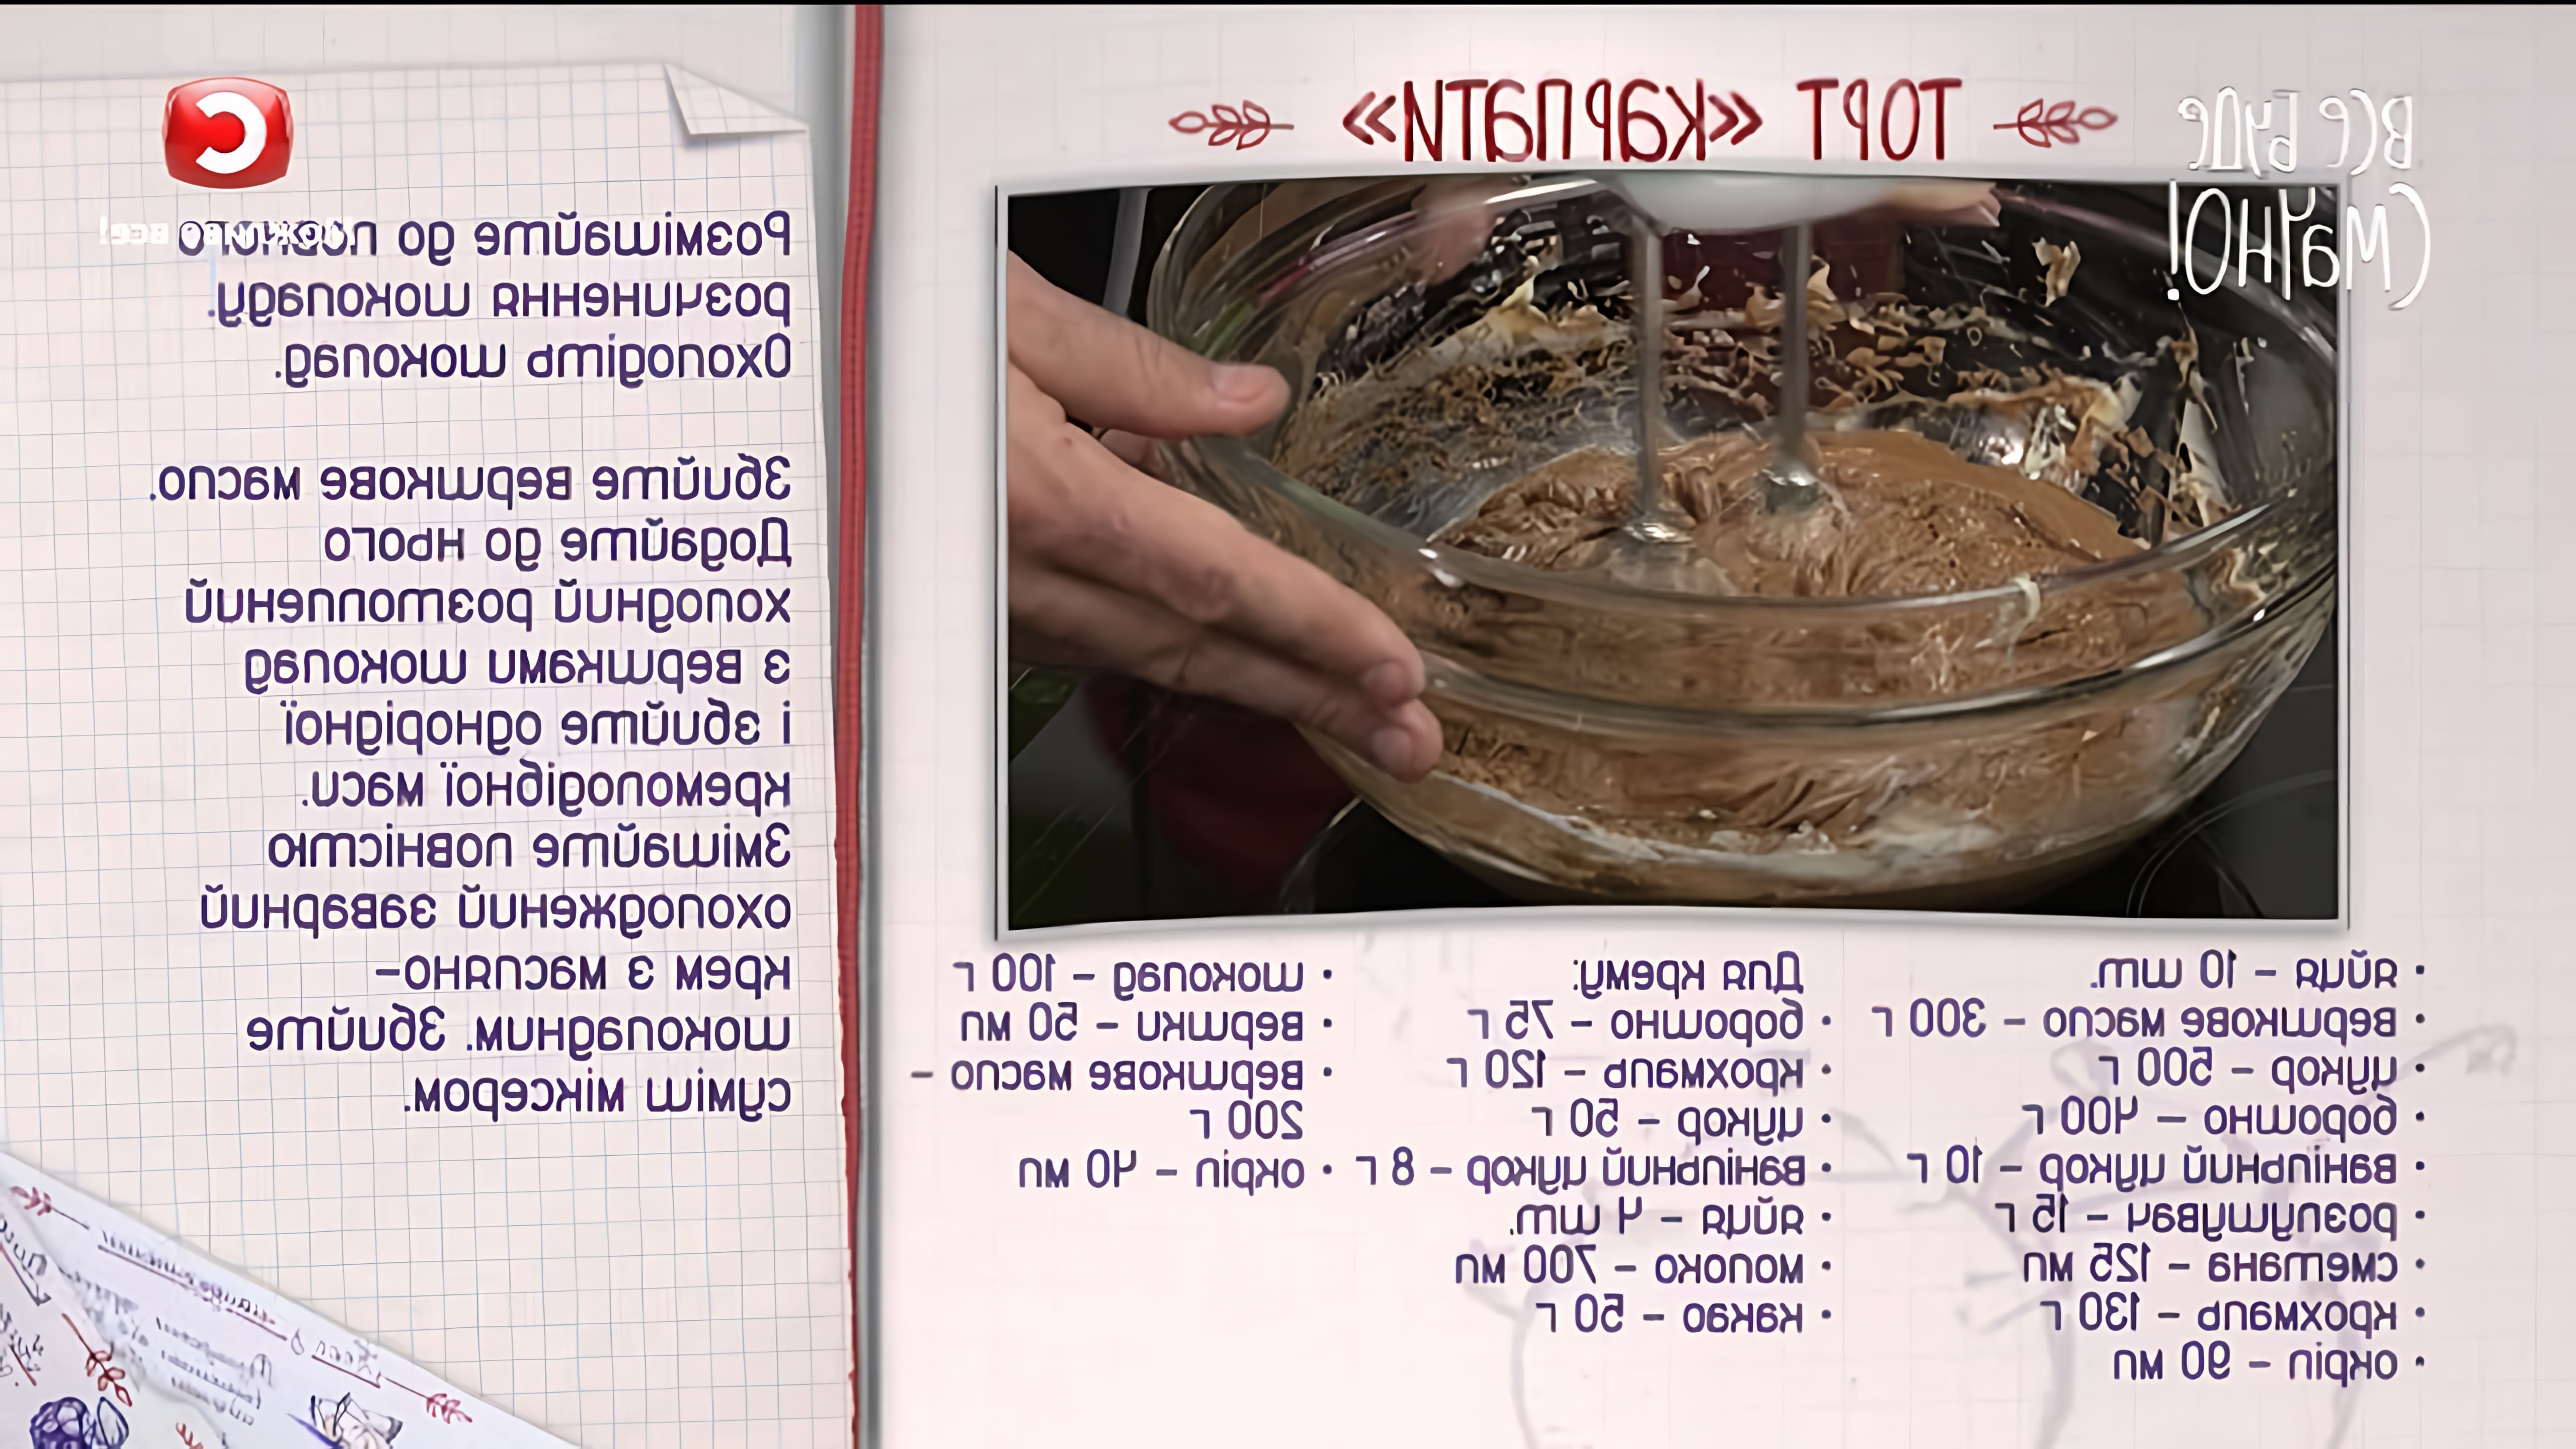 В этом видео-ролике представлен рецепт приготовления торта "Карпаты"